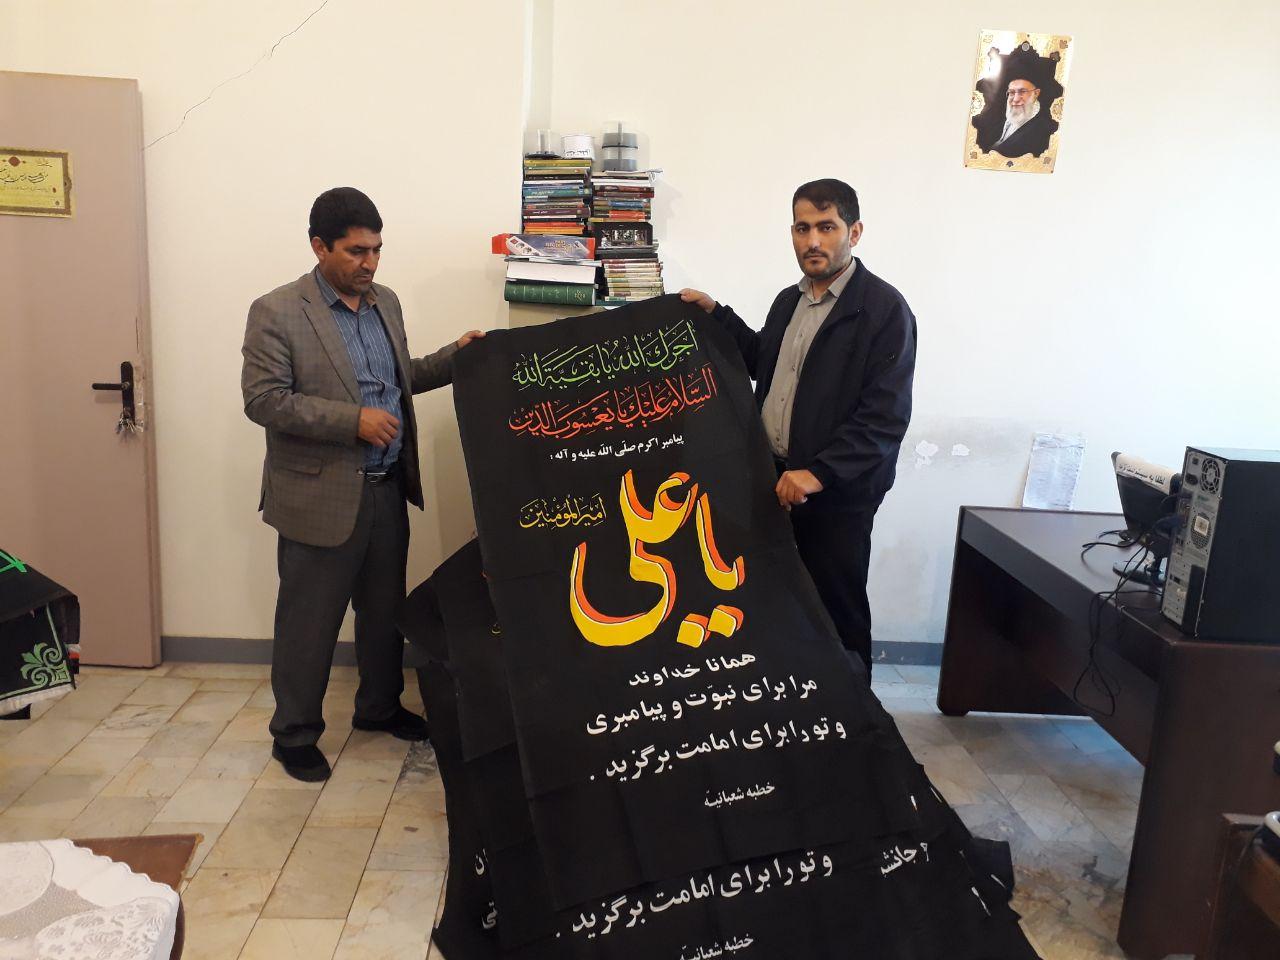 شهر بیله سوار به همت فعالان کانون های مساجد سیاه پوش شد